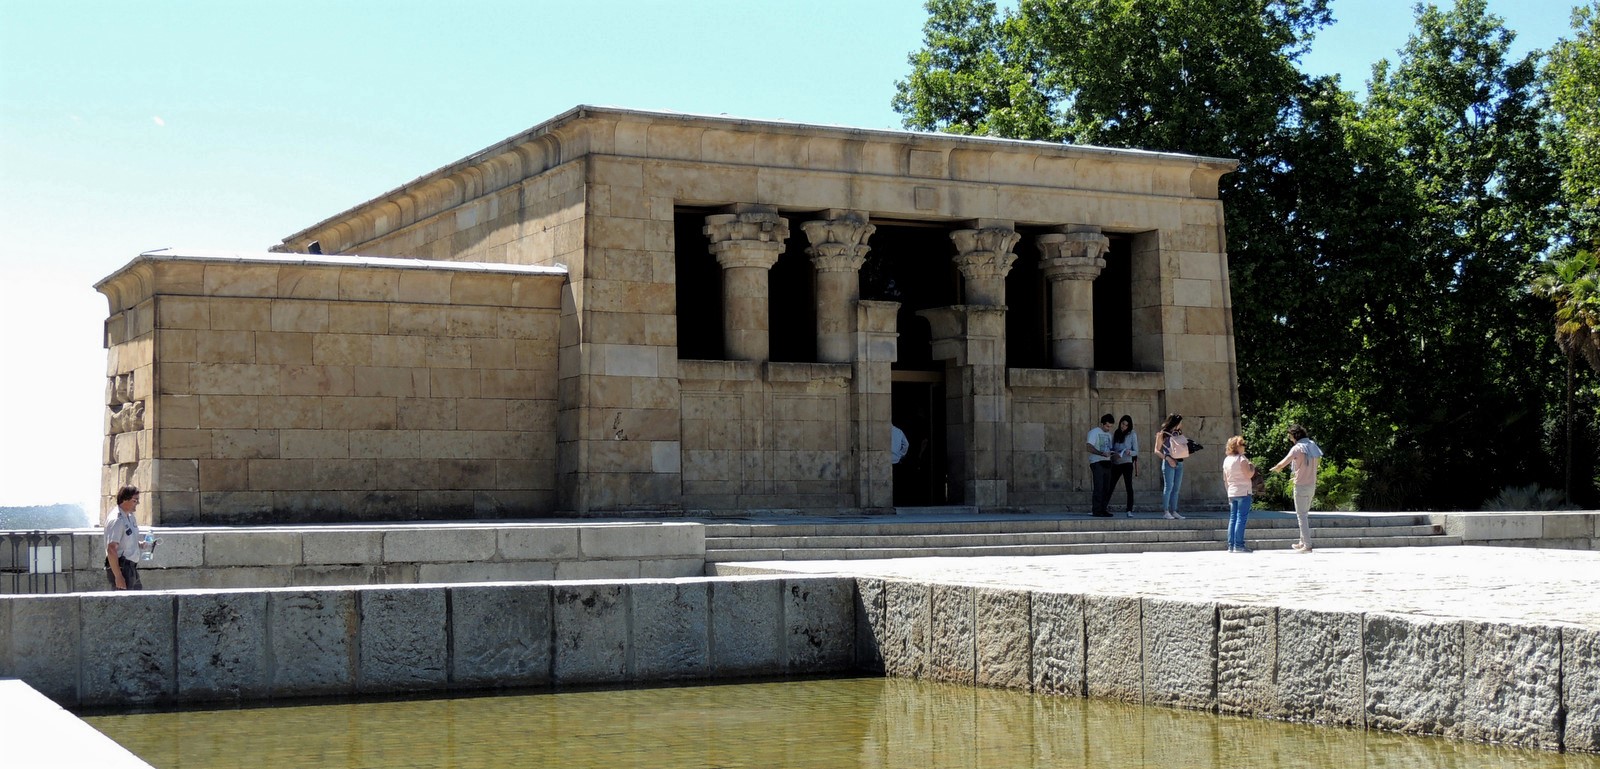 Templo de Debod in Madrid